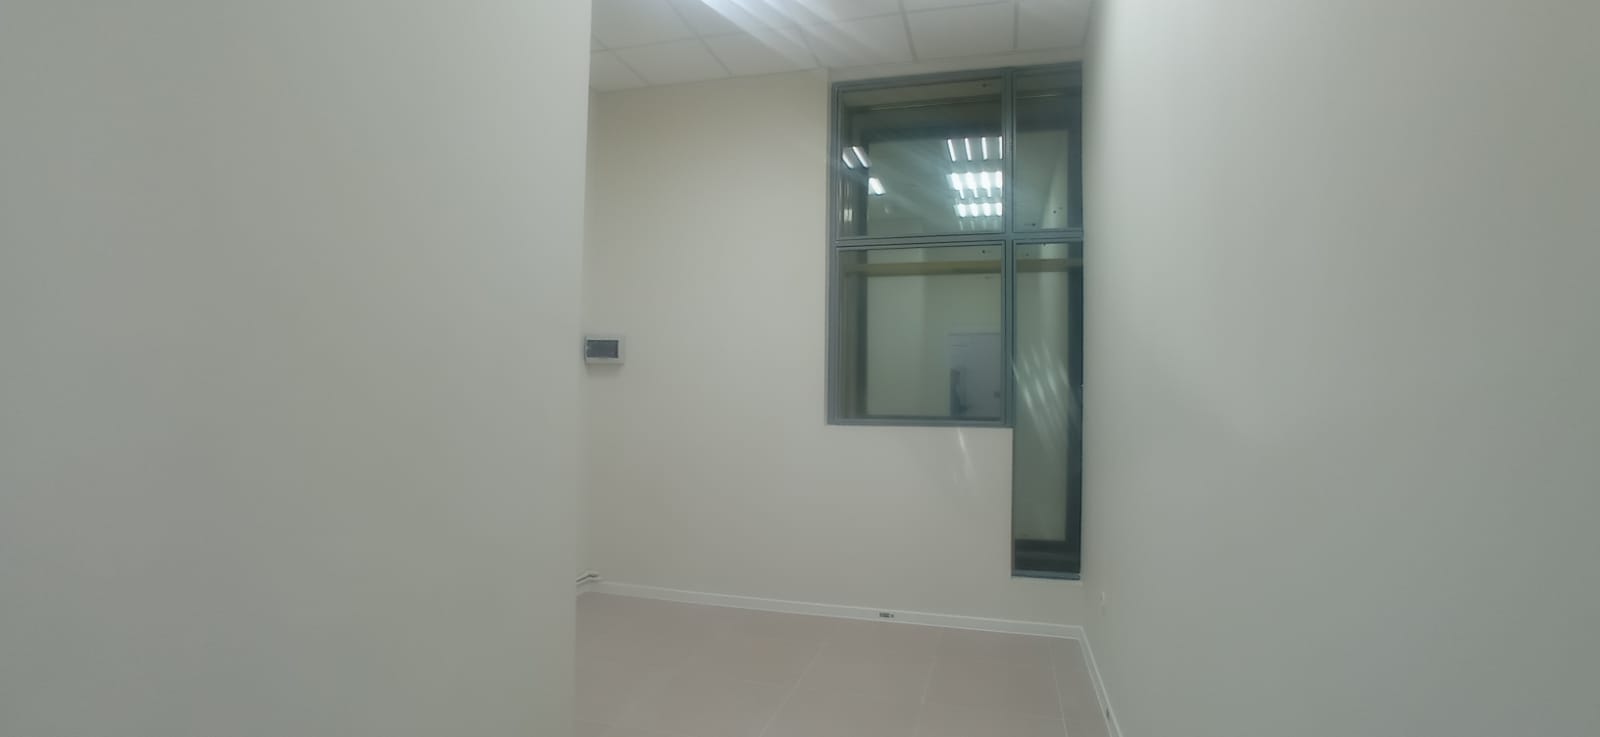 Предлагаем к аренде офисное помещение в офисном центре площадь 11 м² на 2 этаже, напрямую от собственника._8